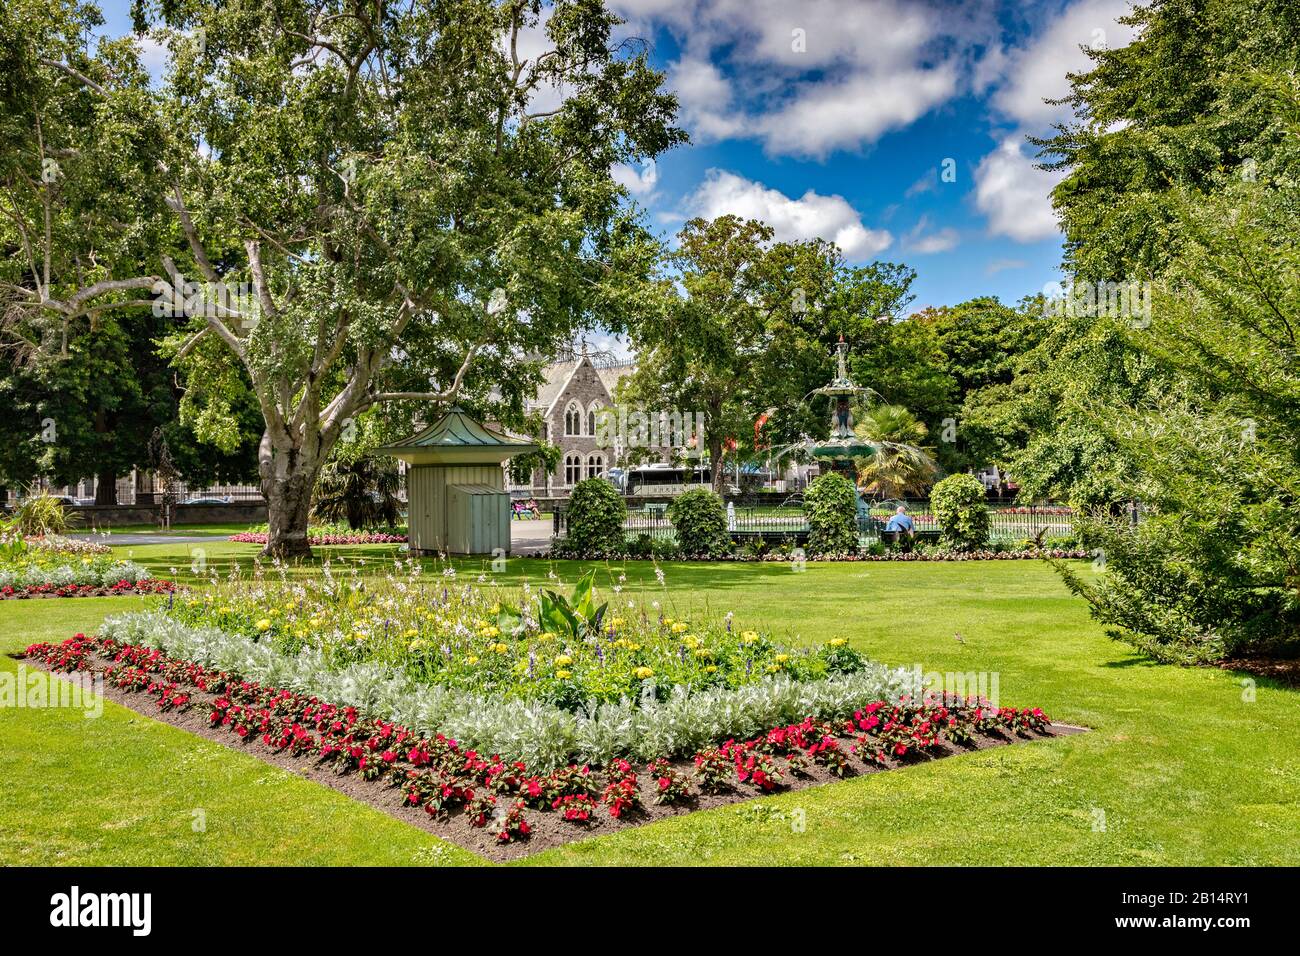 8 janvier 2019: Christchurch, Nouvelle-Zélande - le Gadens botanique, avec un grand lit de fleurs formel, et les bâtiments de la Fontaine de Peacock et du Centre des Arts... Banque D'Images